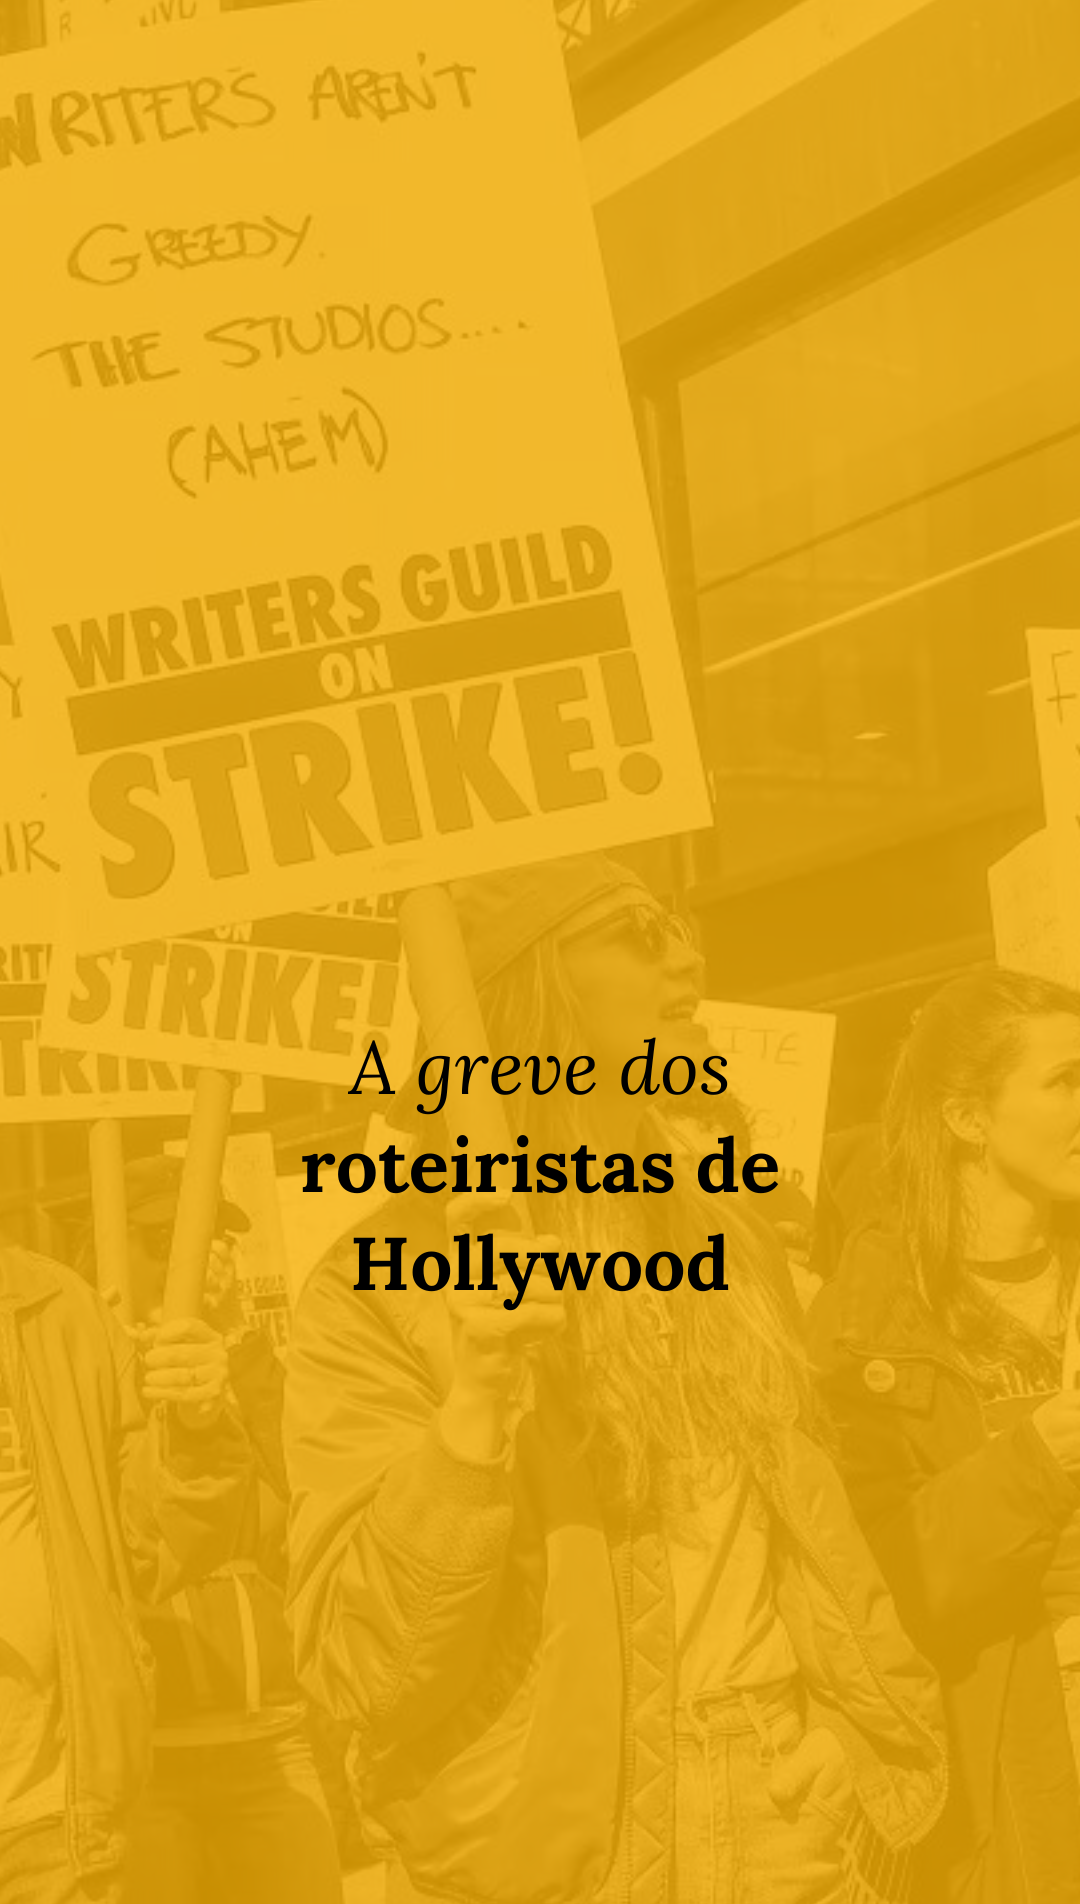 Greve dos roteiristas de Hollywood: quais são as reivindicações? Como afeta a produção de cinema?